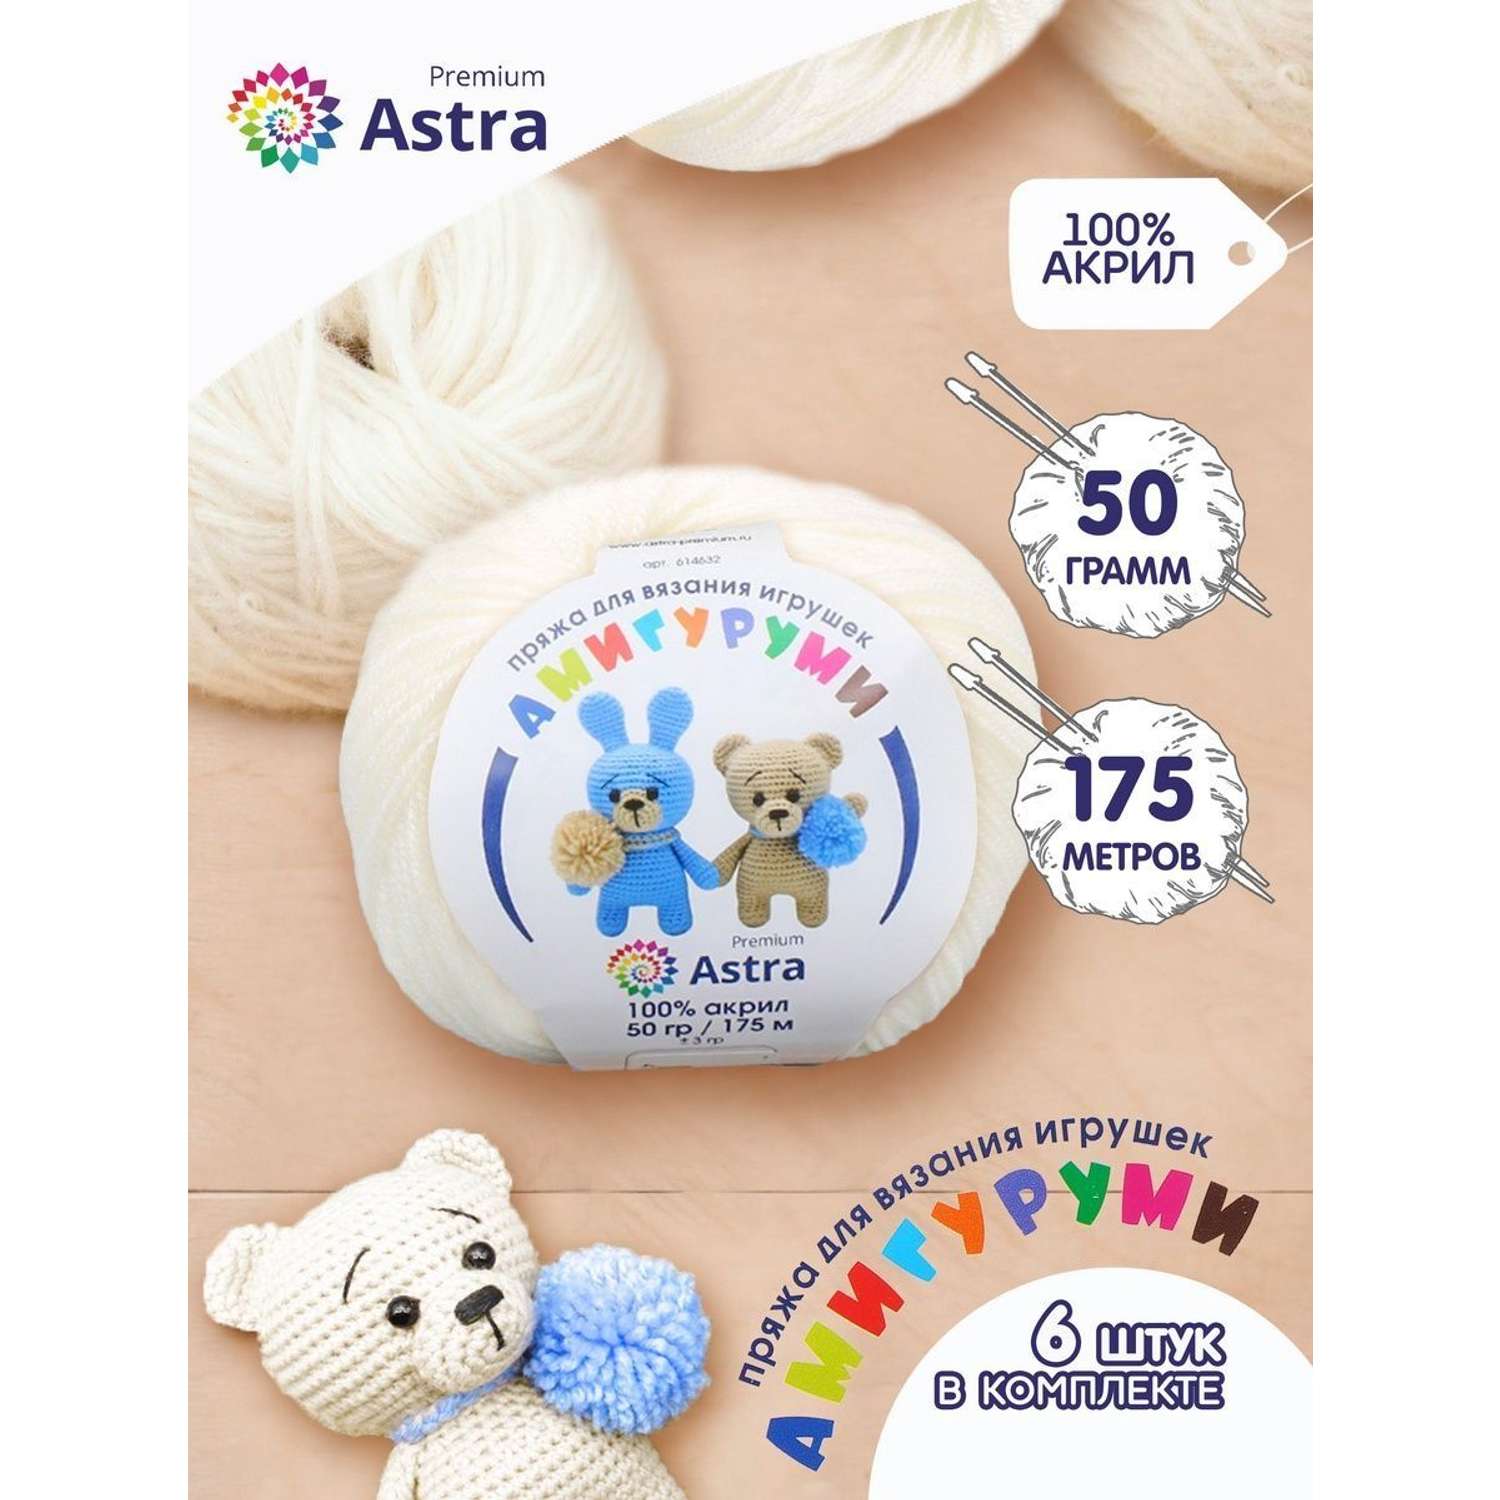 Пряжа для вязания Astra Premium амигуруми акрил для мягких игрушек 50 гр 175 м 002 отбелка 6 мотков - фото 1